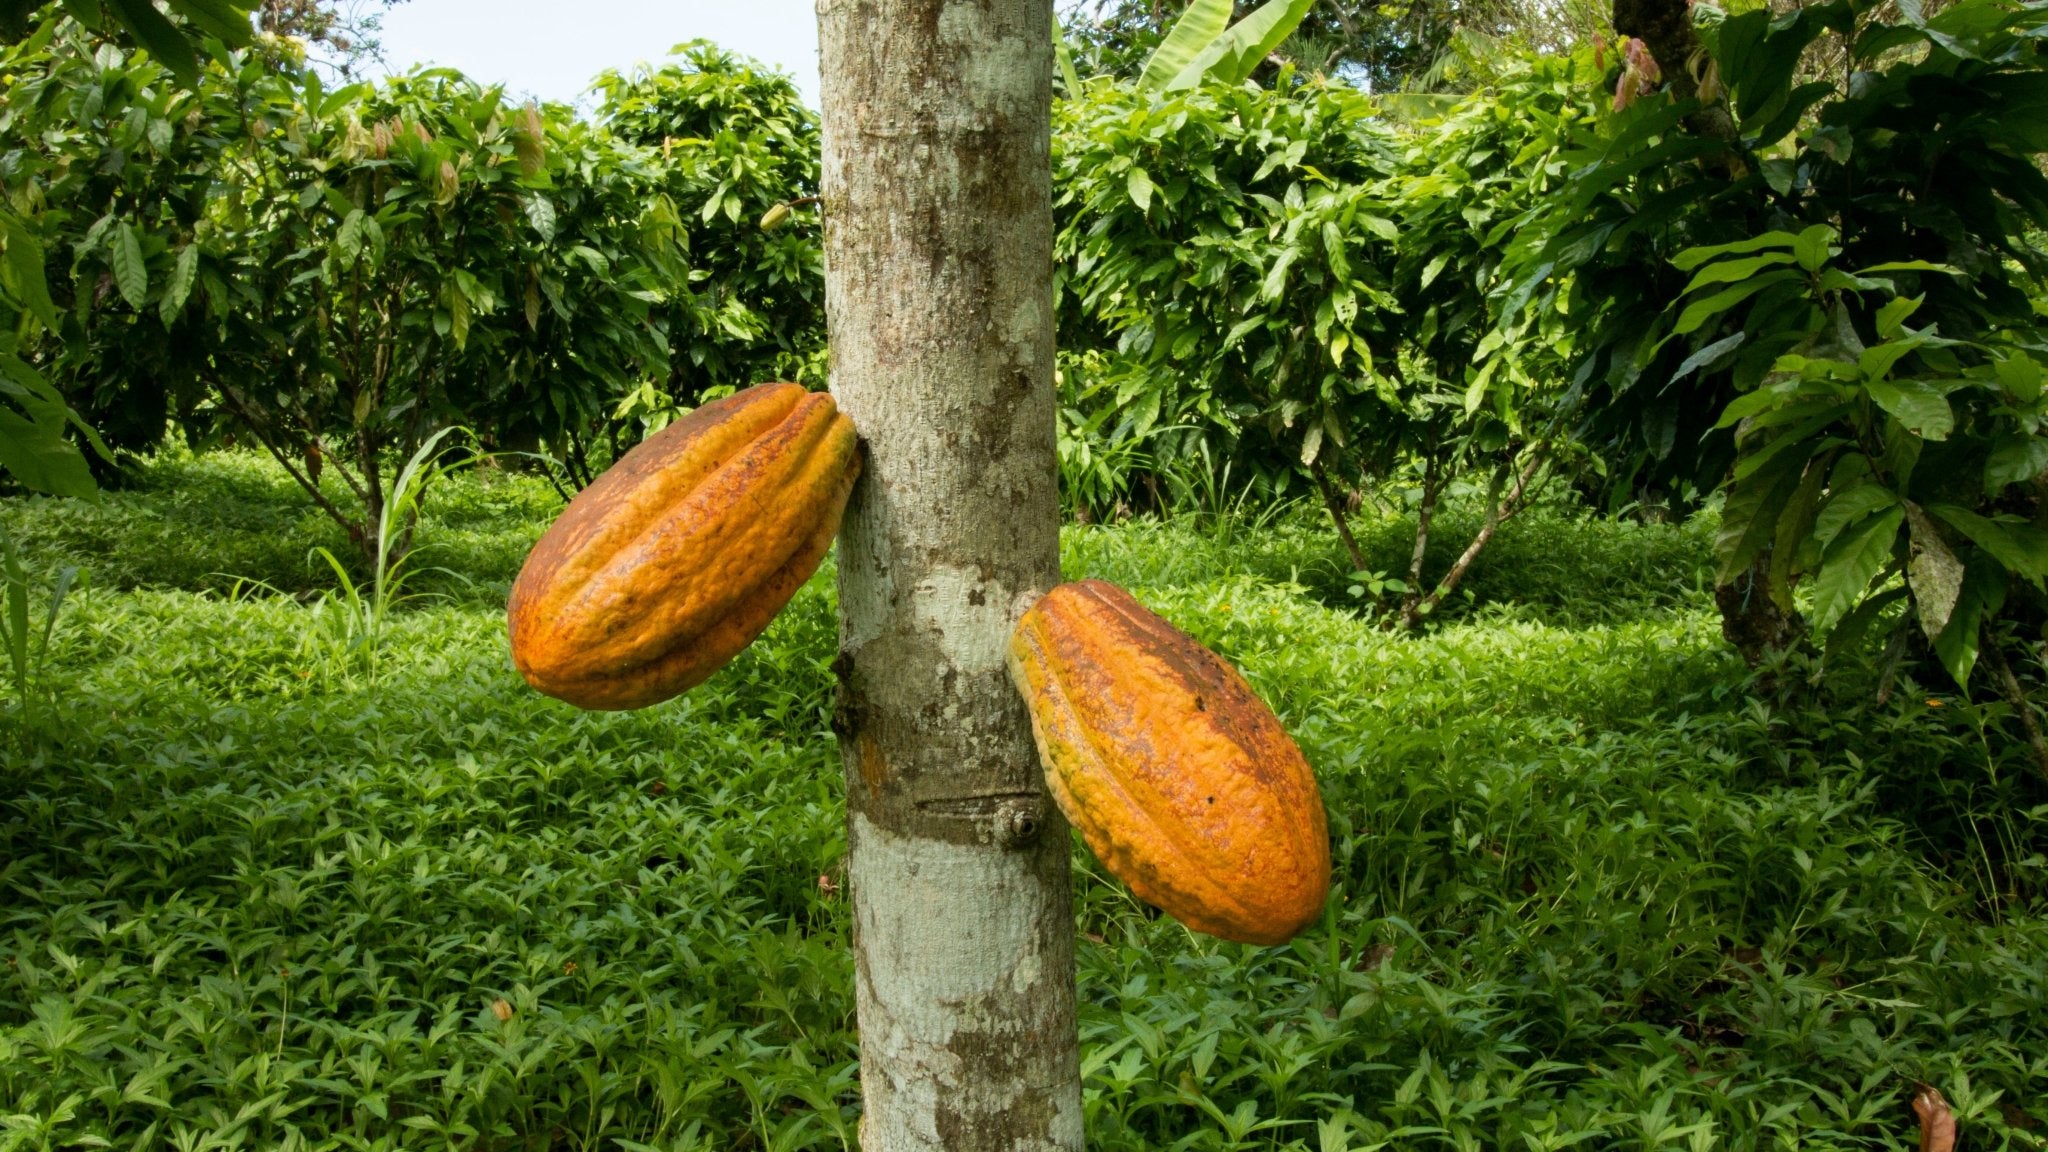 Raw Cacao Nibs 8 oz - Criollo